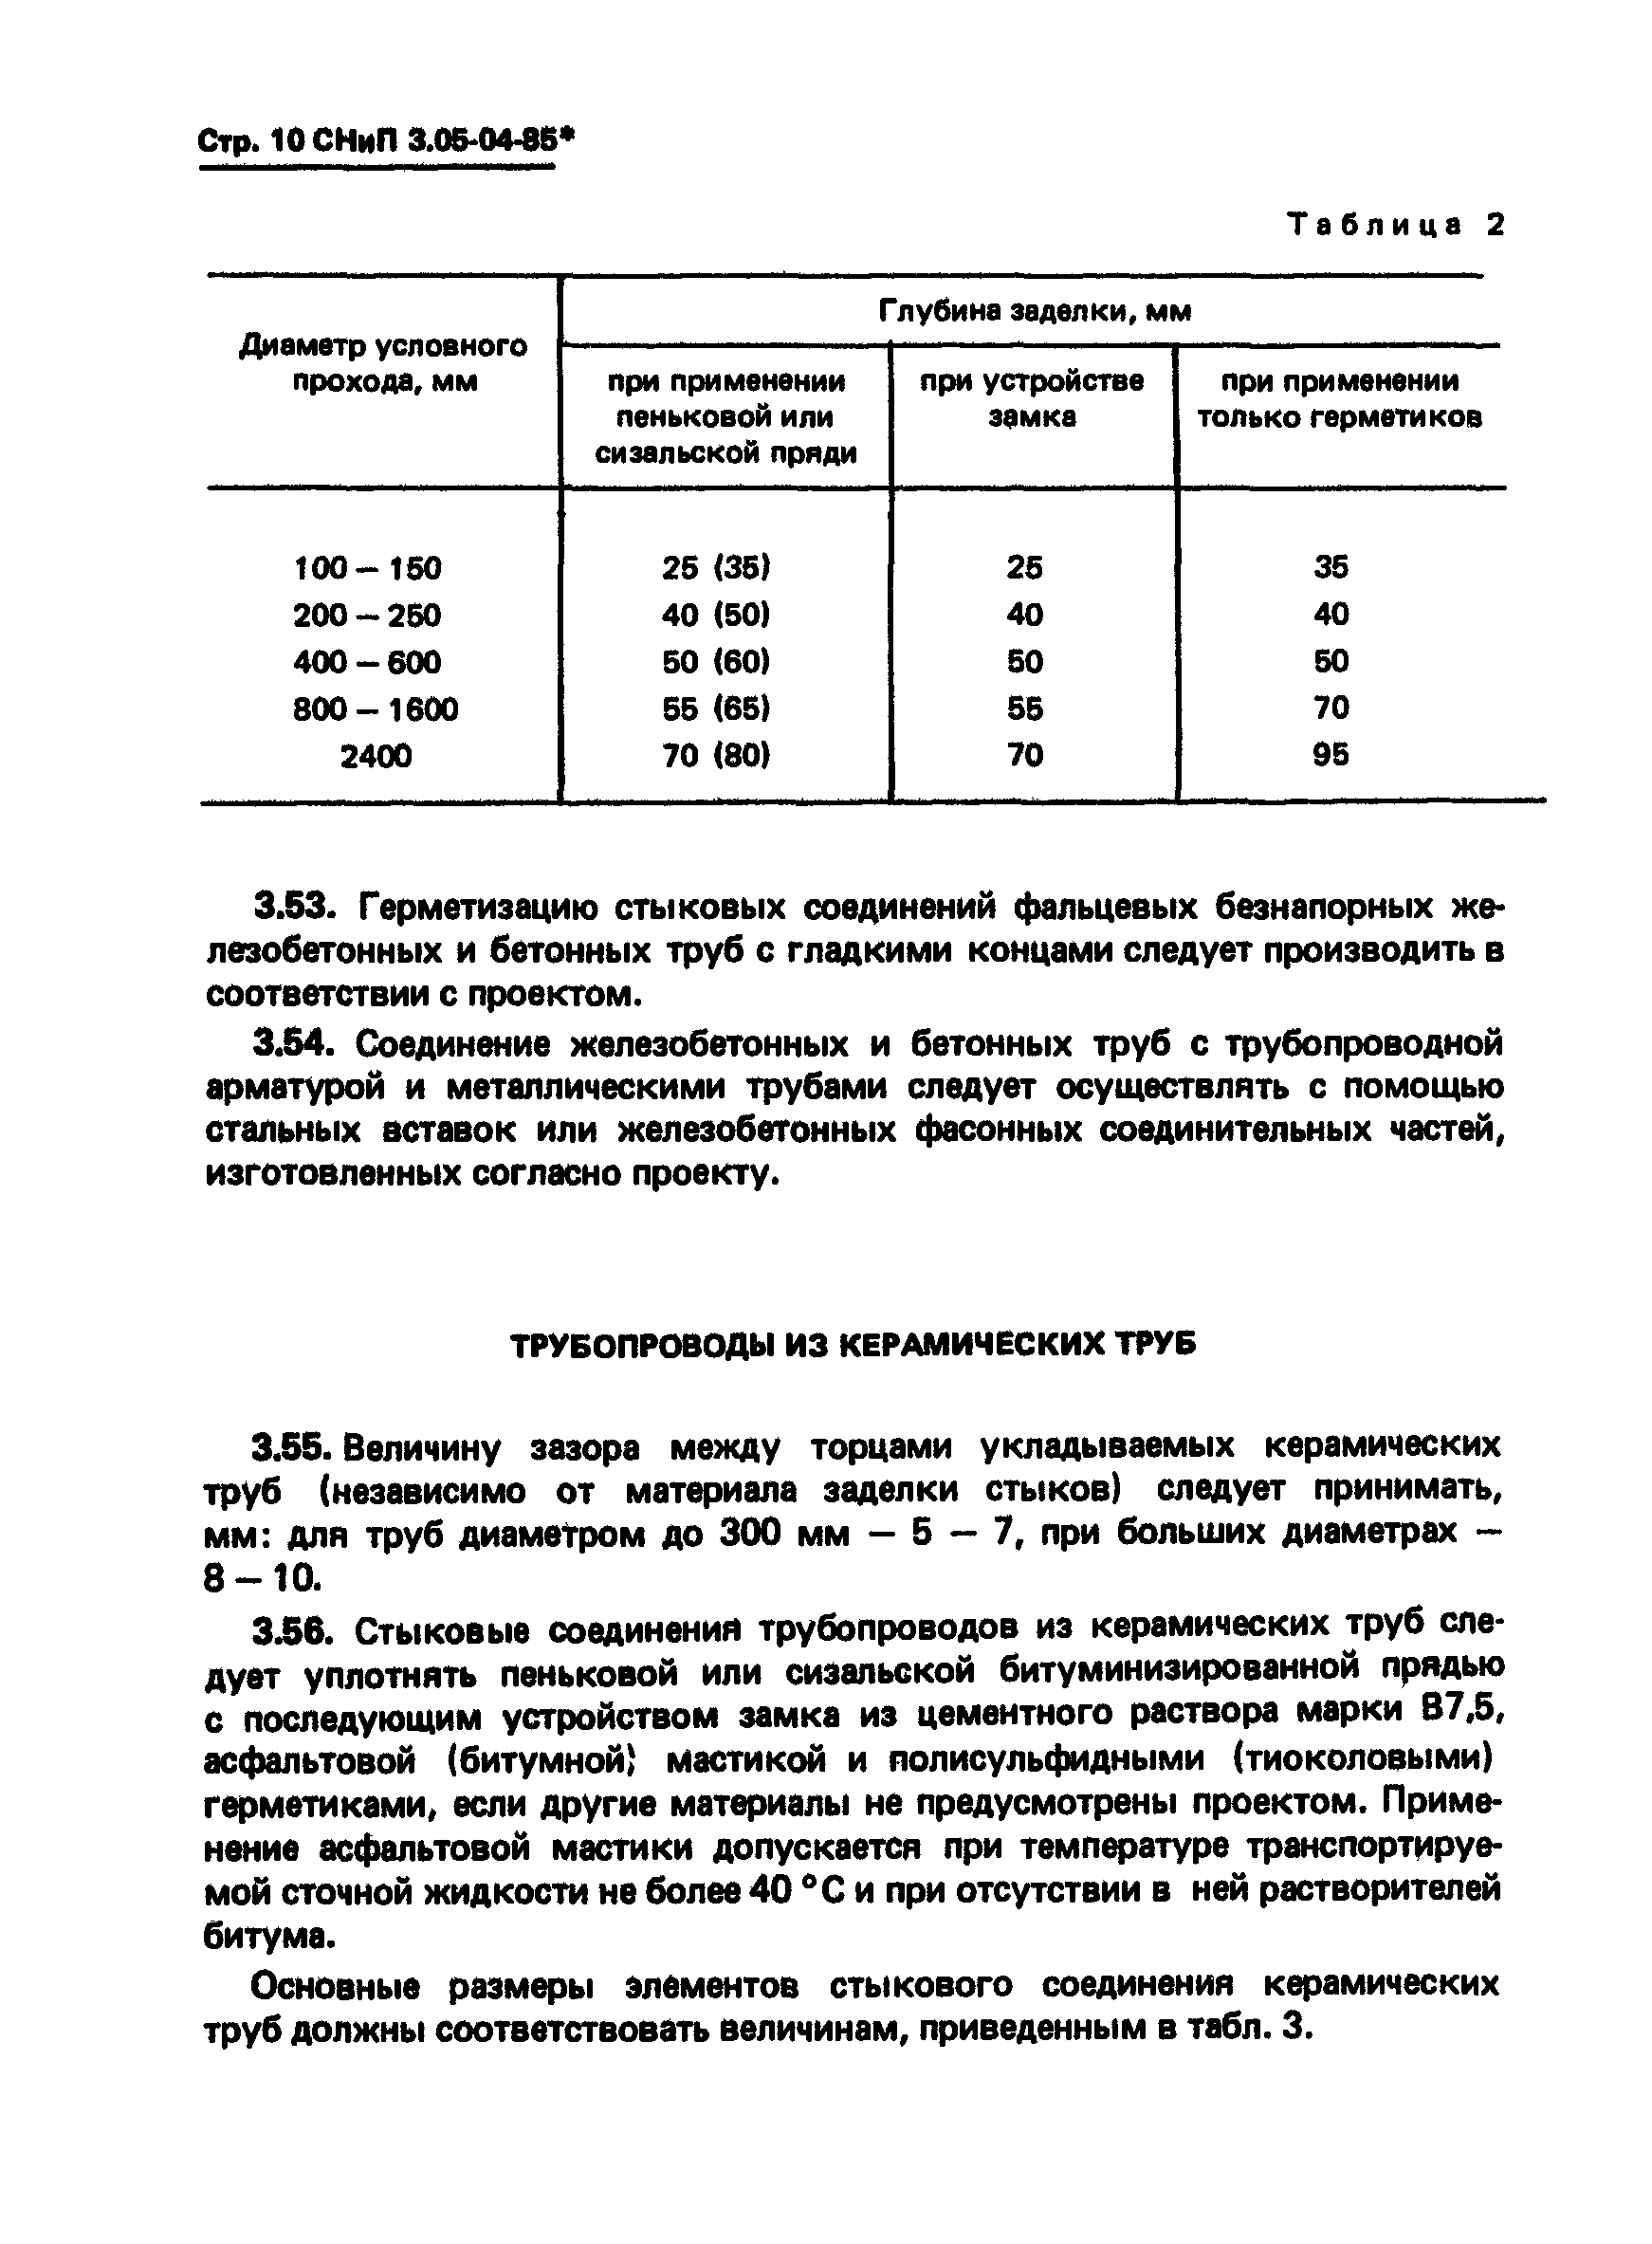 СНиП 3.05.04-85*